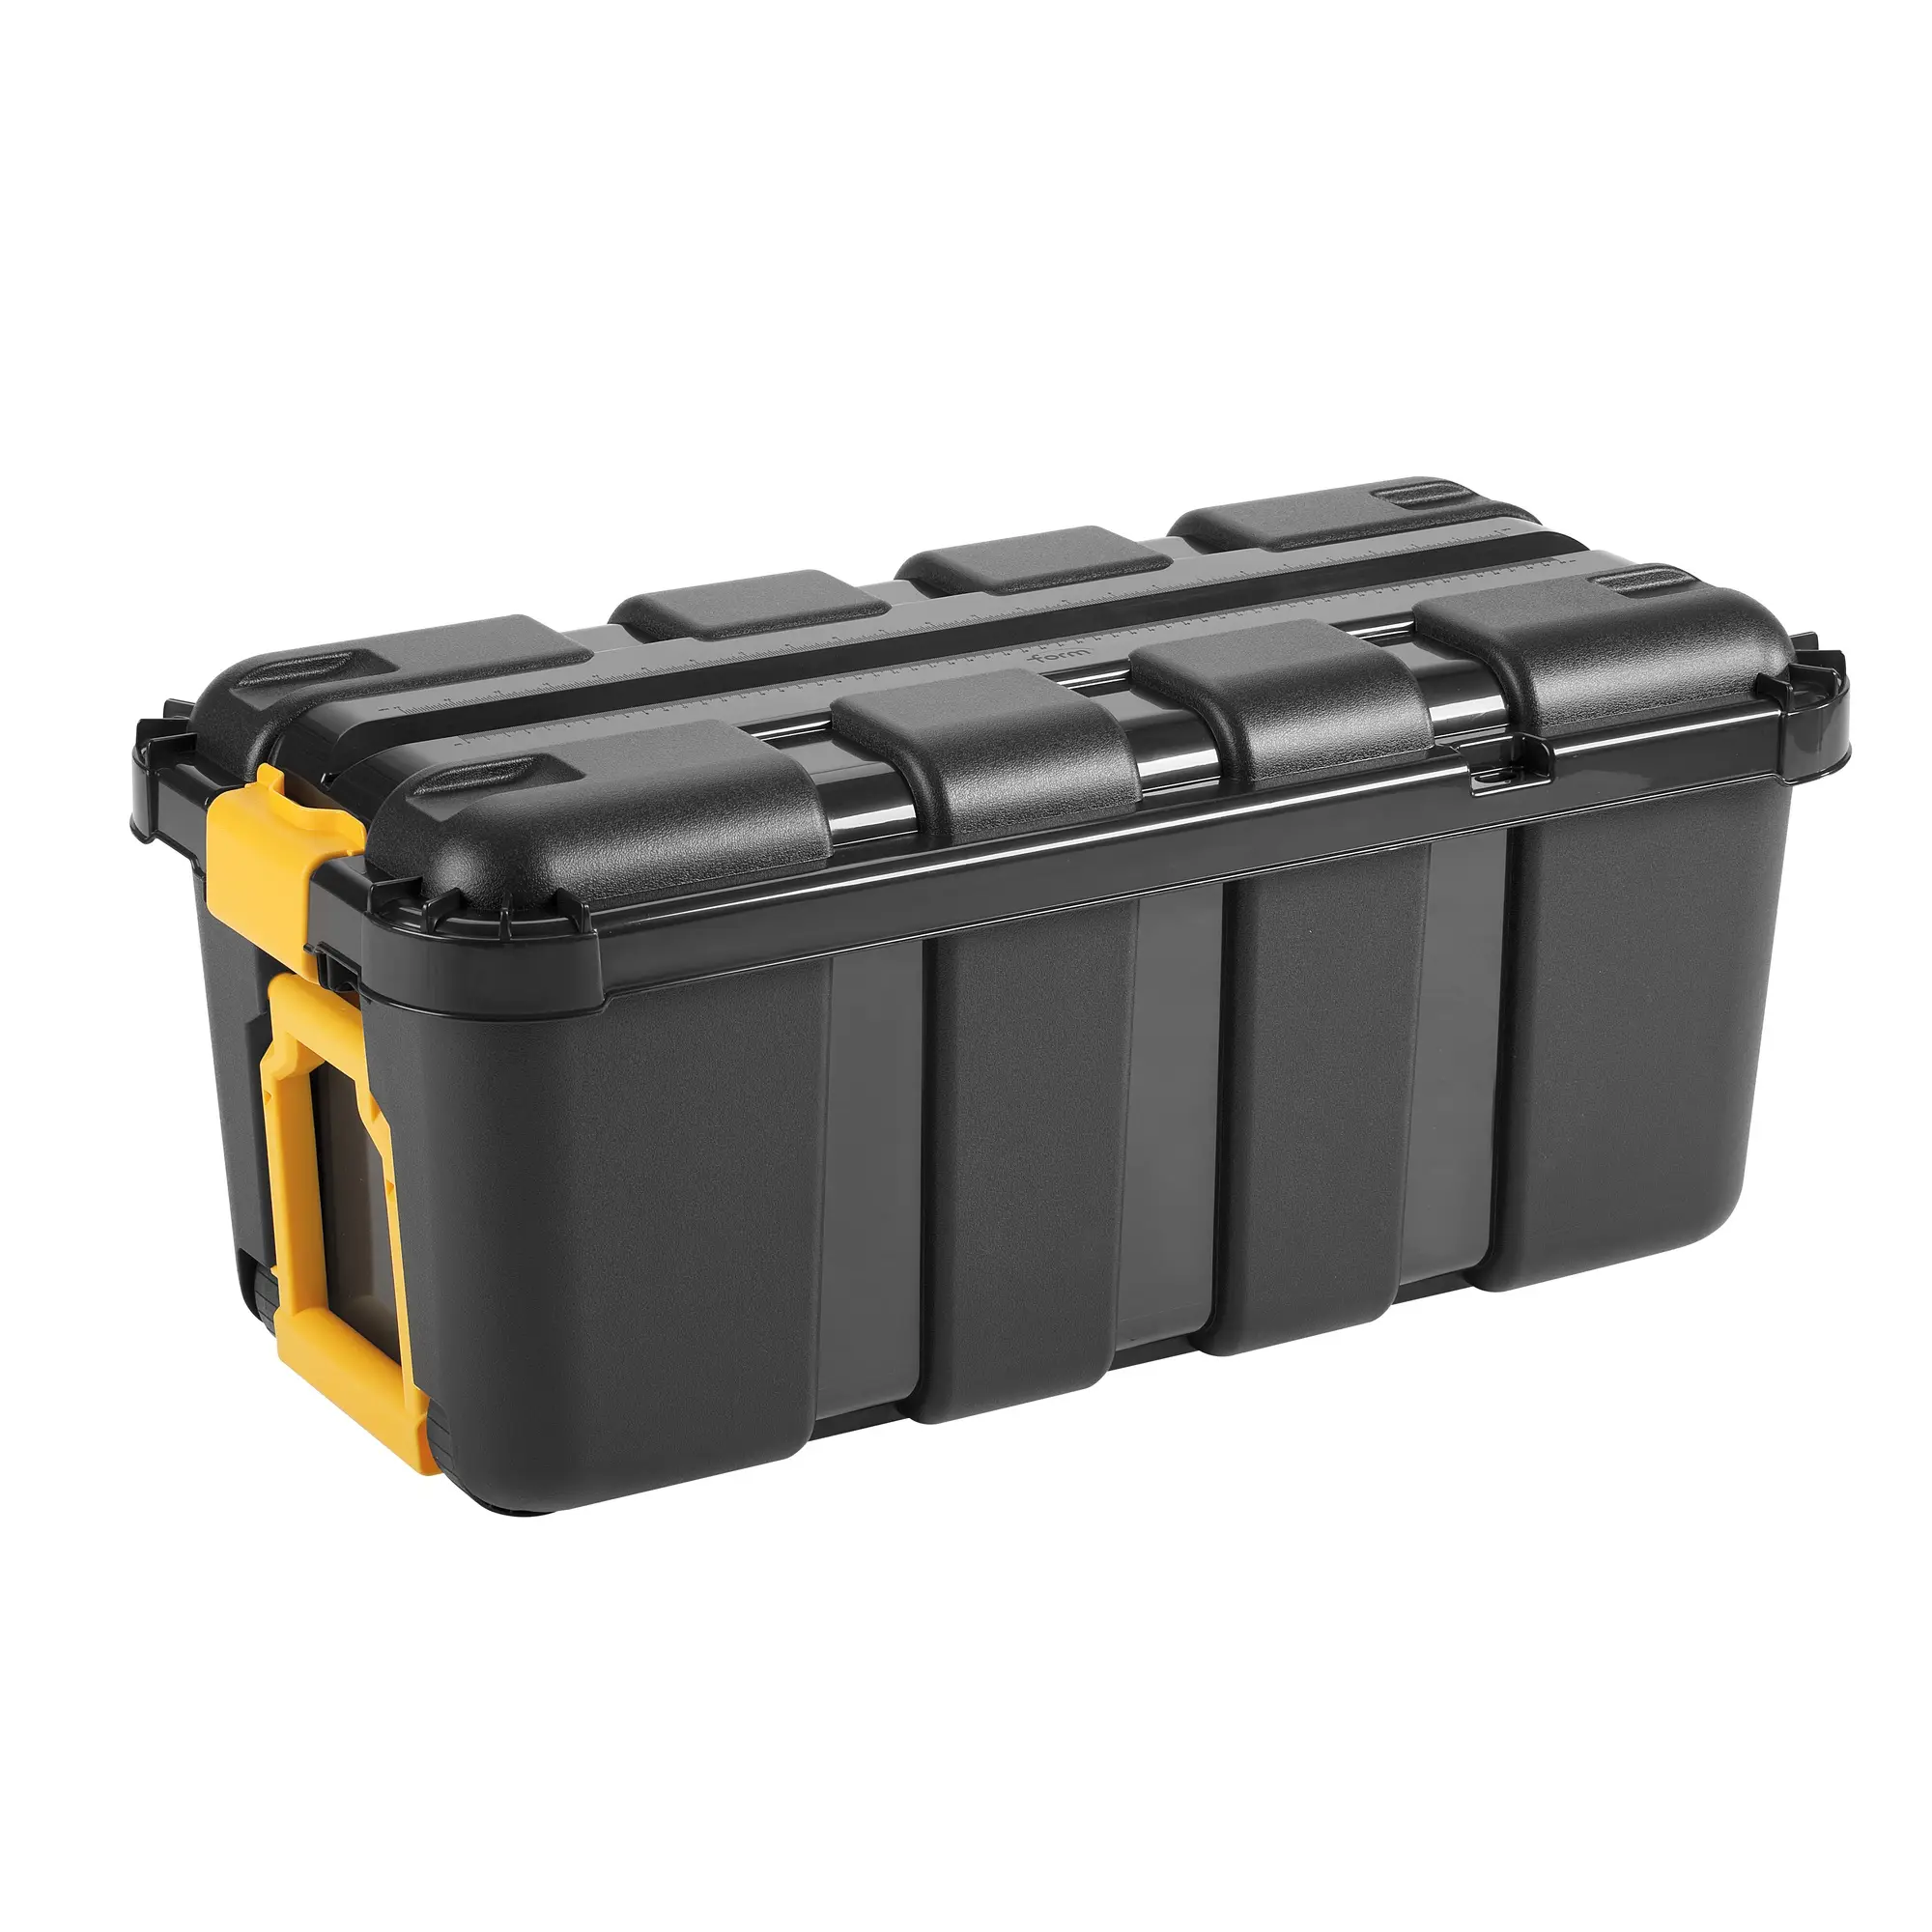 Lagercontainer-Box IN7411 | Aufbewahrungsboxen